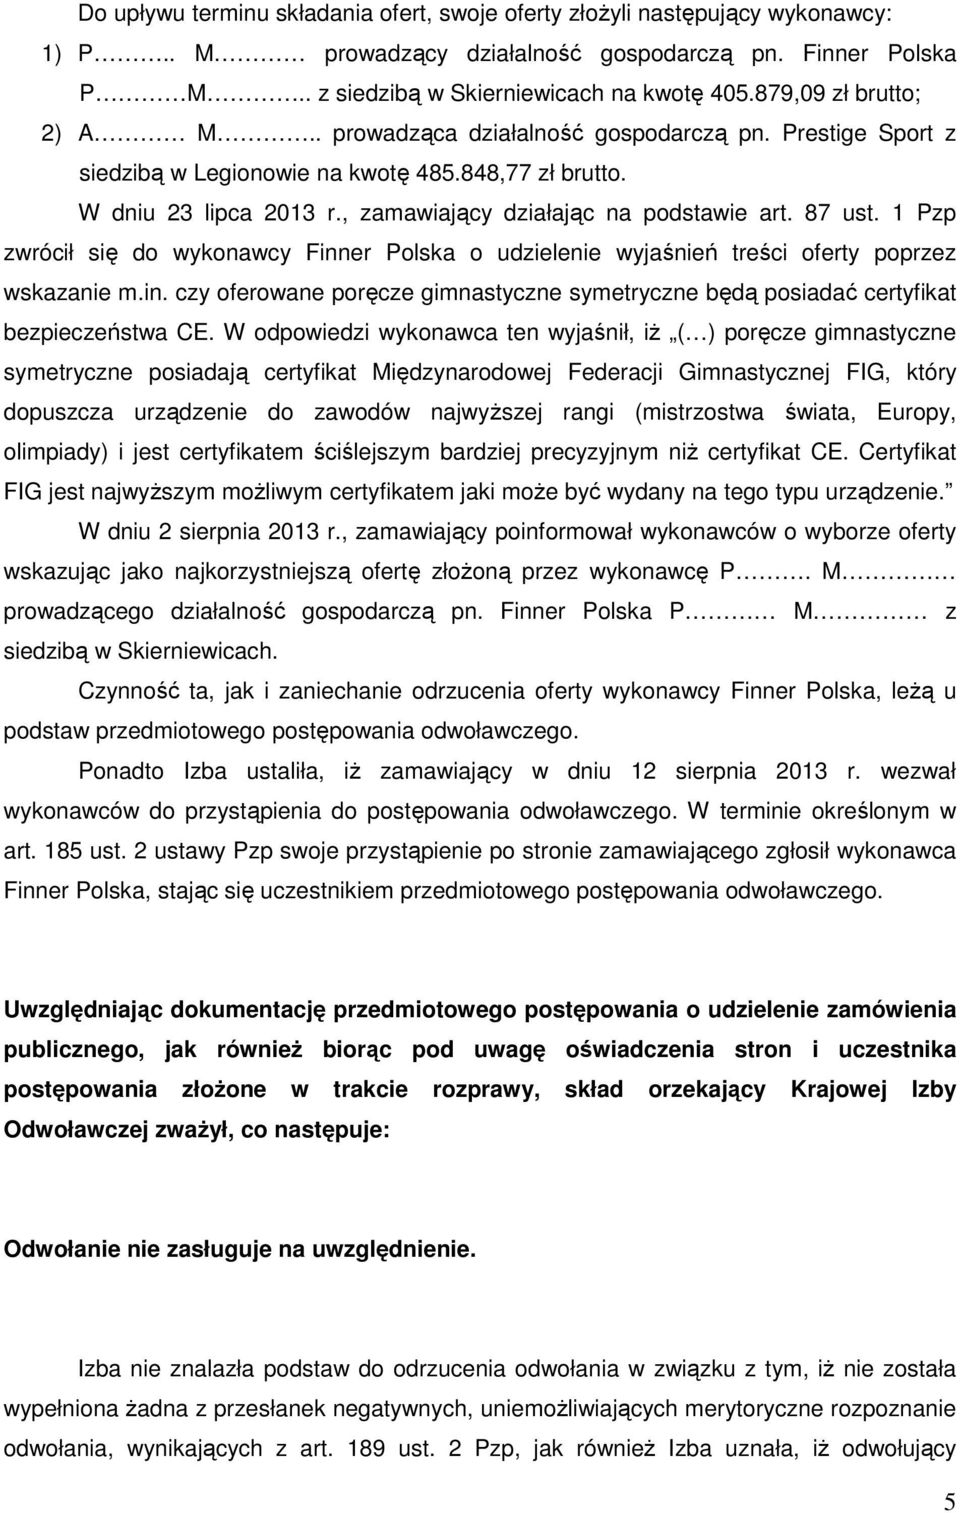 87 ust. 1 Pzp zwrócił się do wykonawcy Finner Polska o udzielenie wyjaśnień treści oferty poprzez wskazanie m.in. czy oferowane poręcze gimnastyczne symetryczne będą posiadać certyfikat bezpieczeństwa CE.